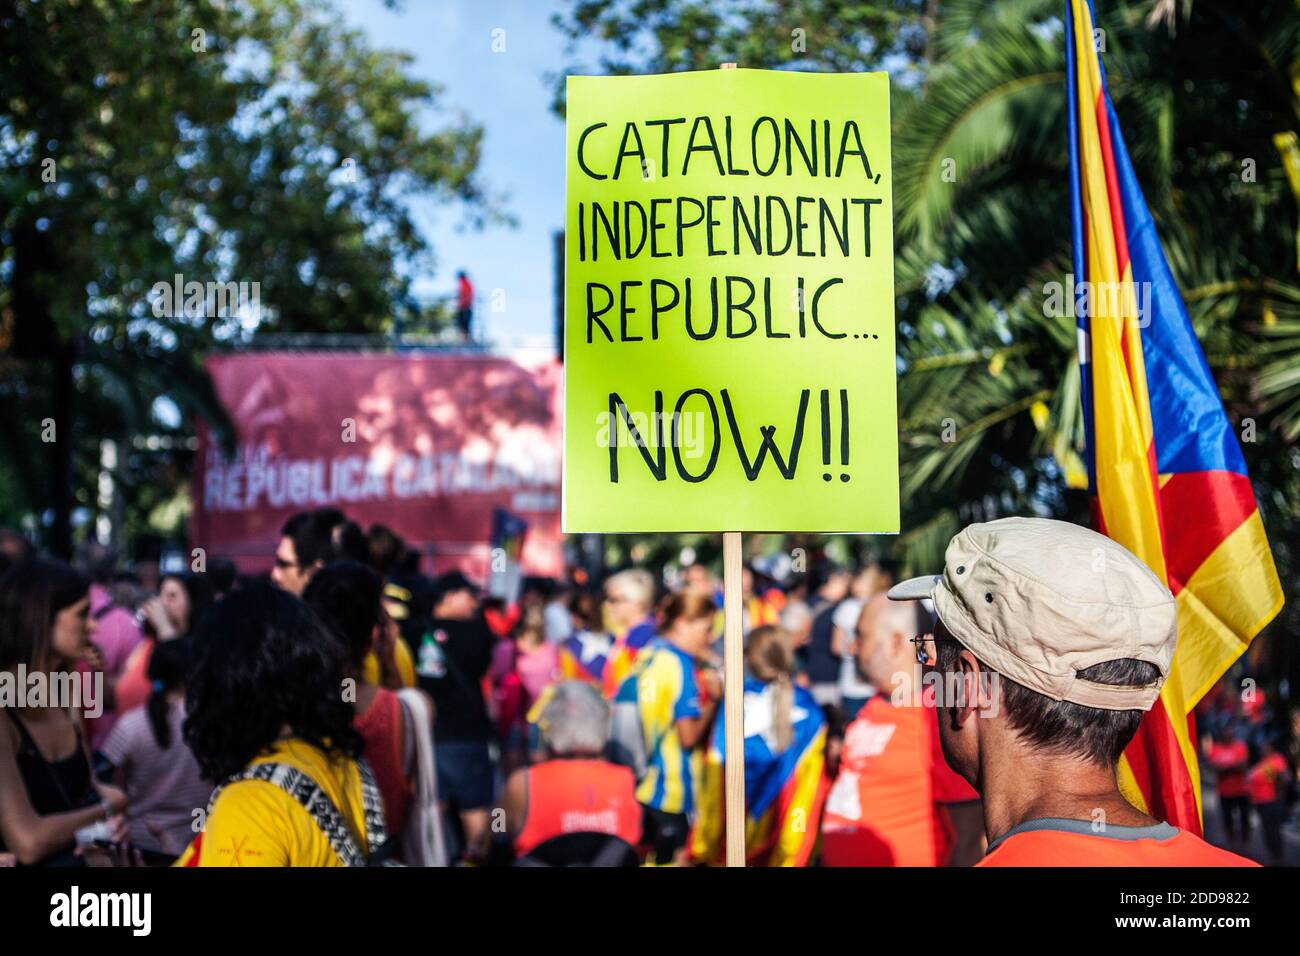 Migliaia di persone partecipano a una marcia richiesta dal gruppo catalano pro-indipendenza Asambea Nacional Catalana (ANC) in occasione della Giornata Nazionale della Catalogna (Diada) festeggiamenti nel centro di Barcellona, nella Spagna nord-orientale, 11 settembre 2018. Foto di Antonio Cascio/ABACAPRESS.COM Foto Stock